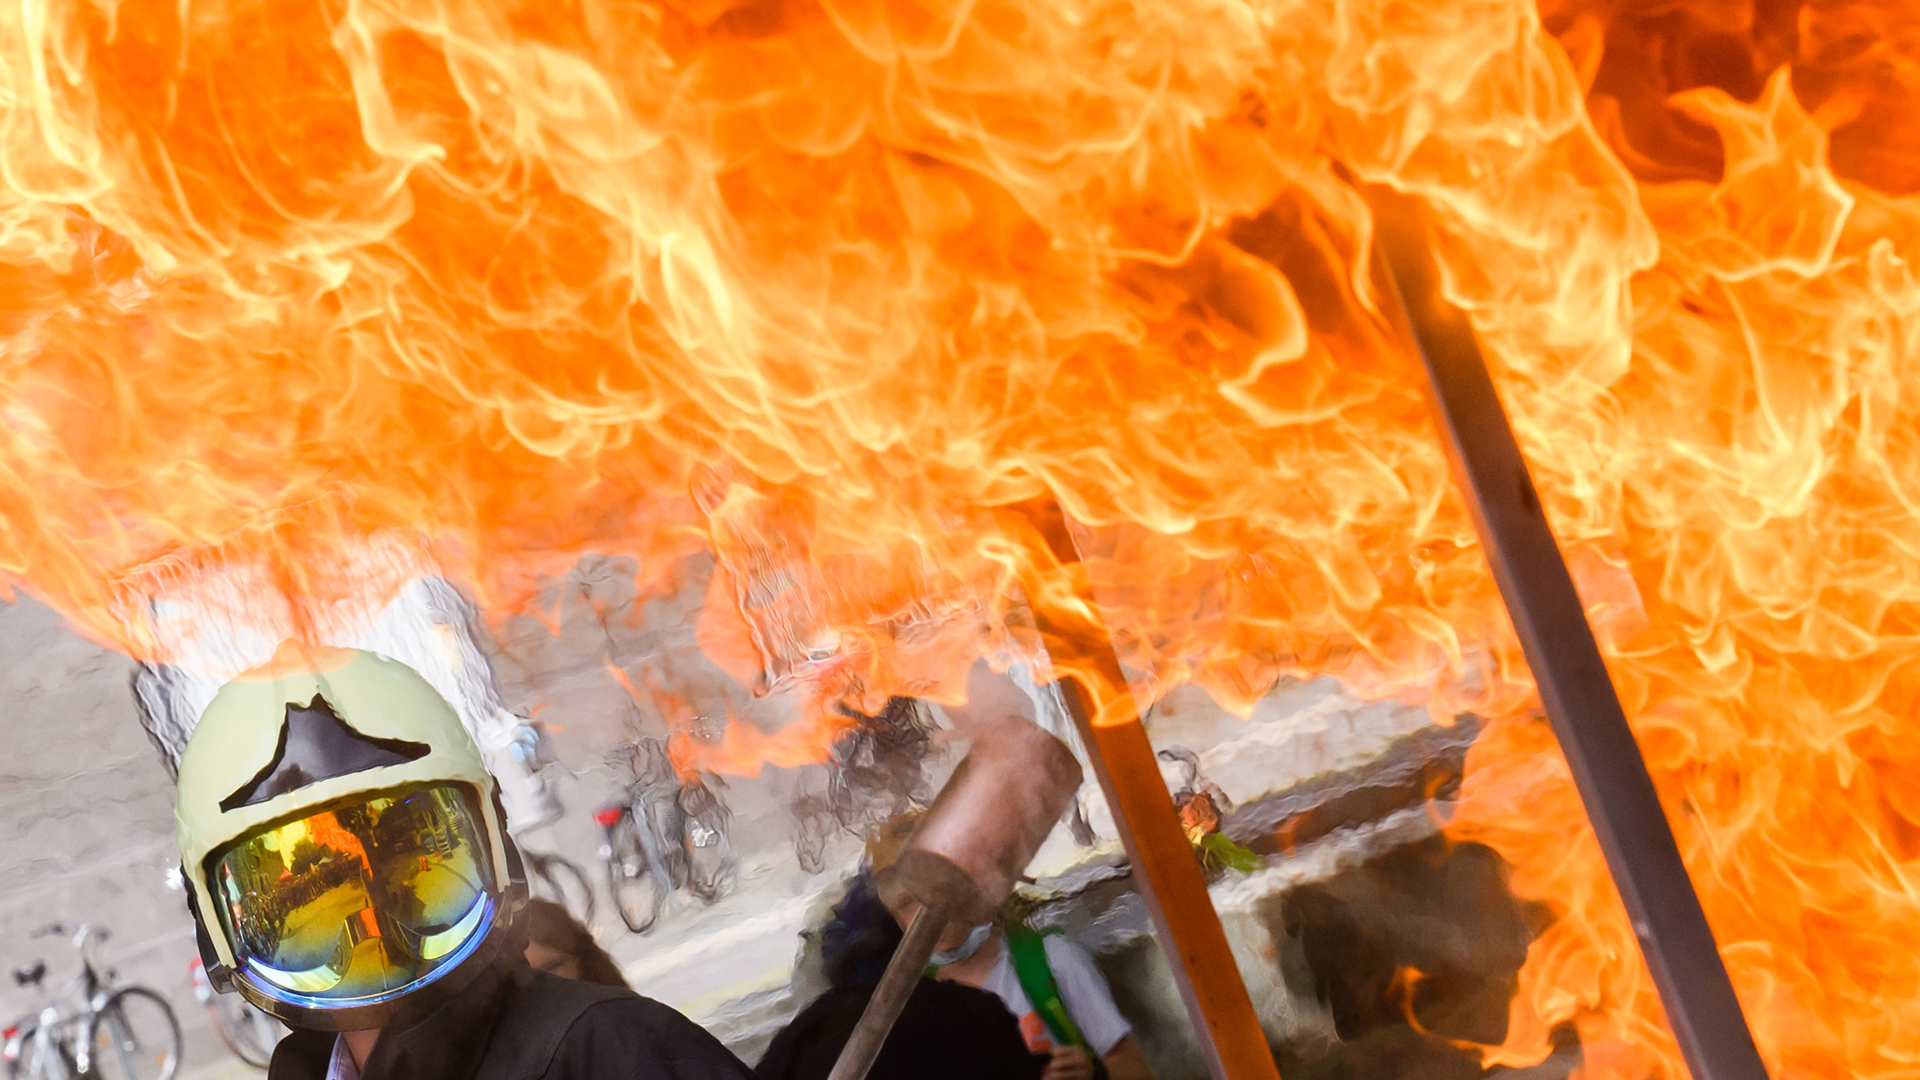 Flammen mit Feuerwehrmann, der einen Helm trägt. | dpa